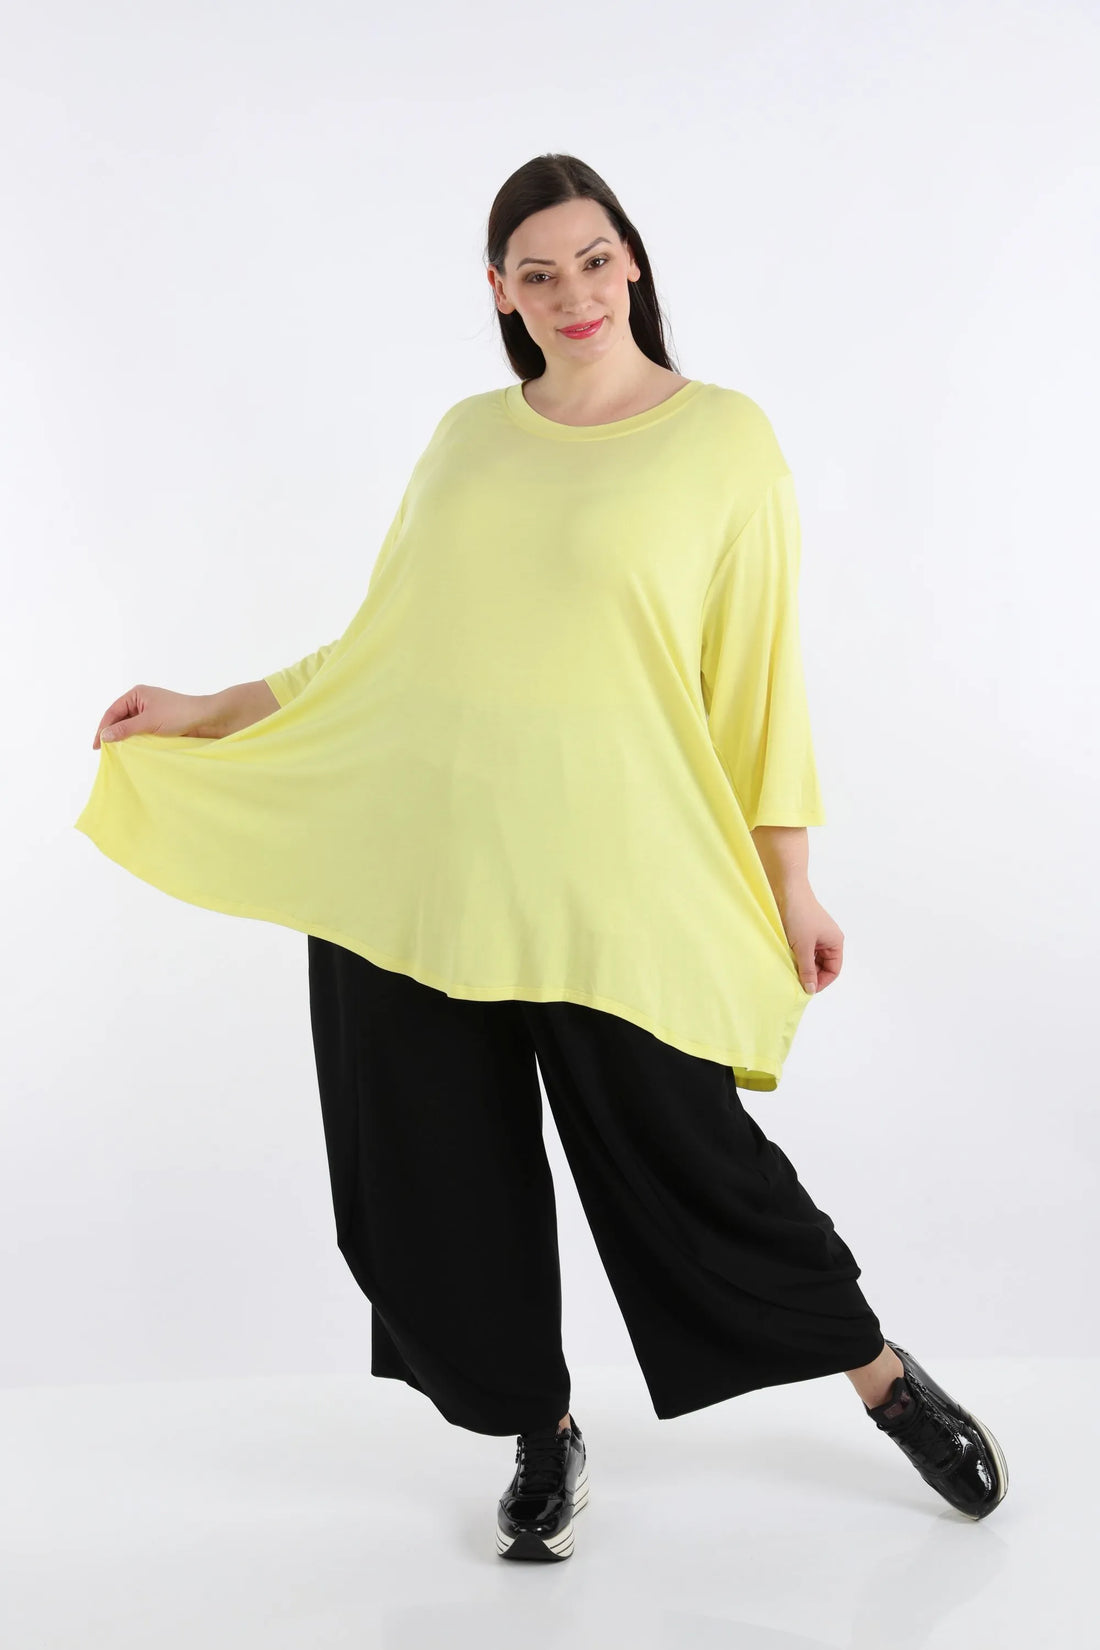 A-Form Shirt von AKH Fashion aus Viskose, 1233.02135, Gelb, Unifarben, Ausgefallen, Modern